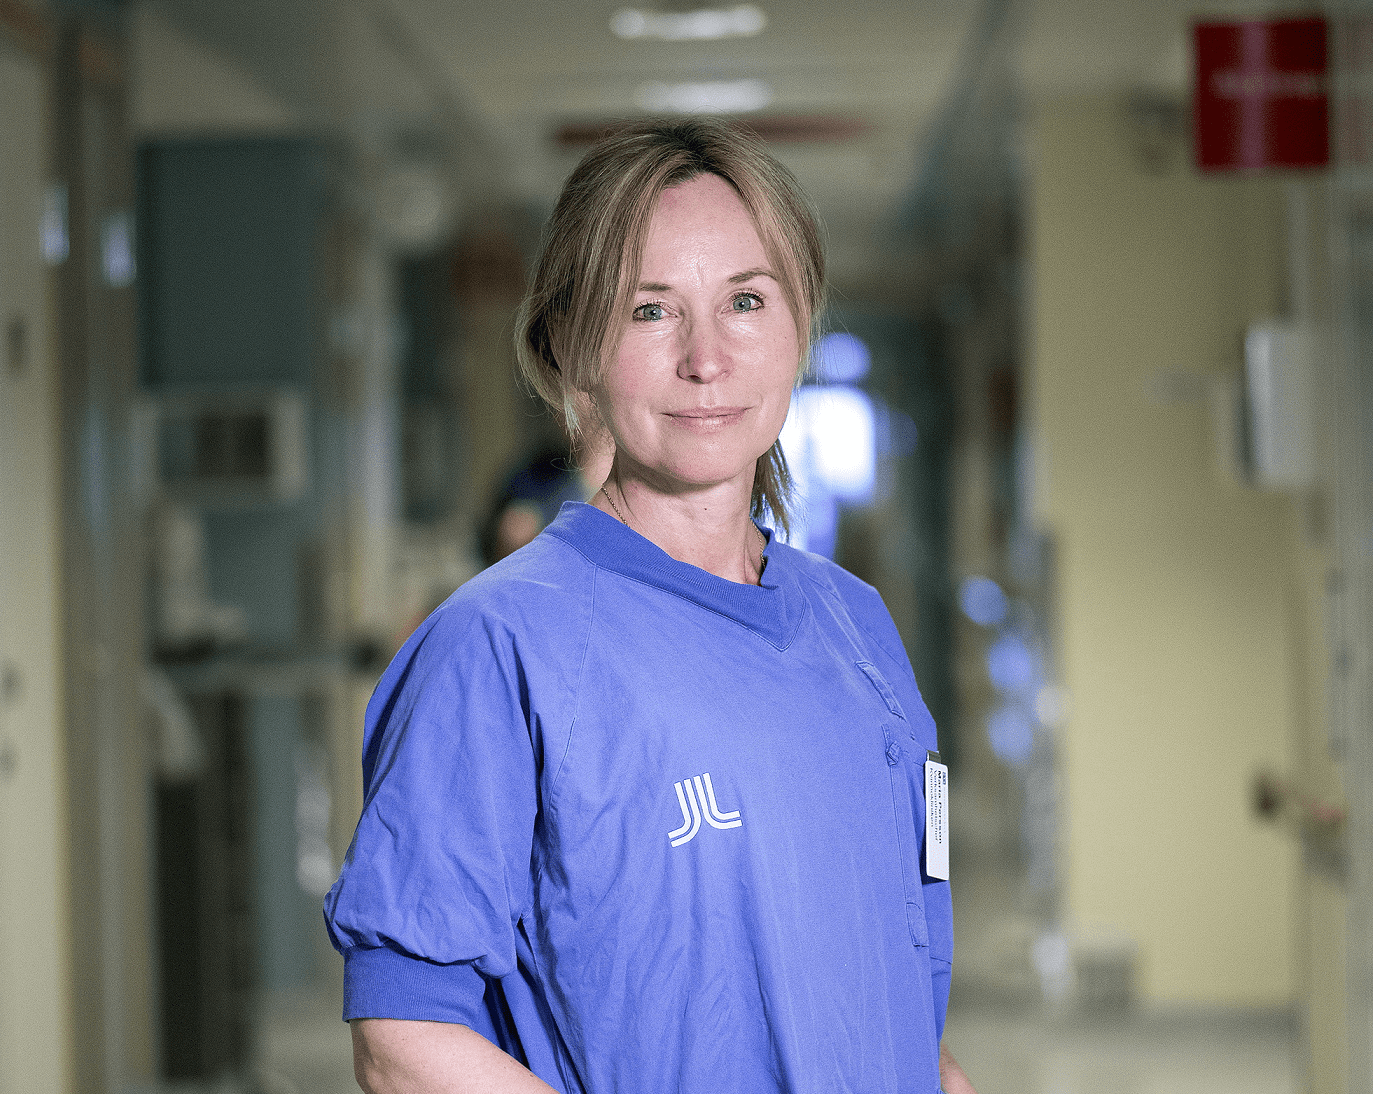 Nu är Danderyds sjukhus nya uppdrag i gång: rekonstruktiv kirurgi vid svåra förlossningsskador